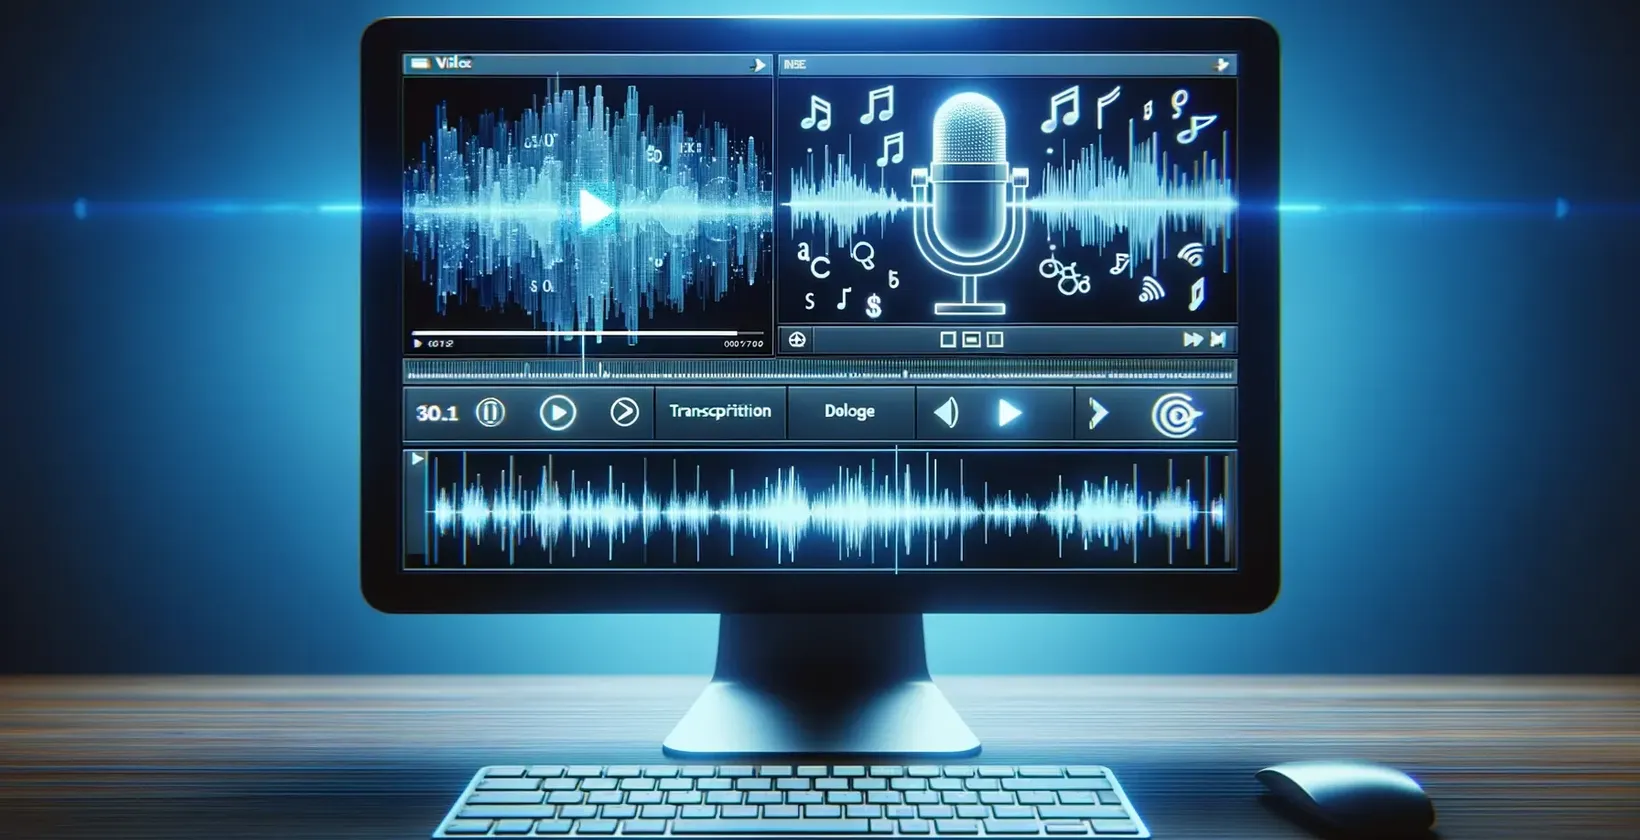 Zaslon računala s glazbenim bilješkama i mikrofonom koji se koristi za transkripciju videozapisa u tekst.